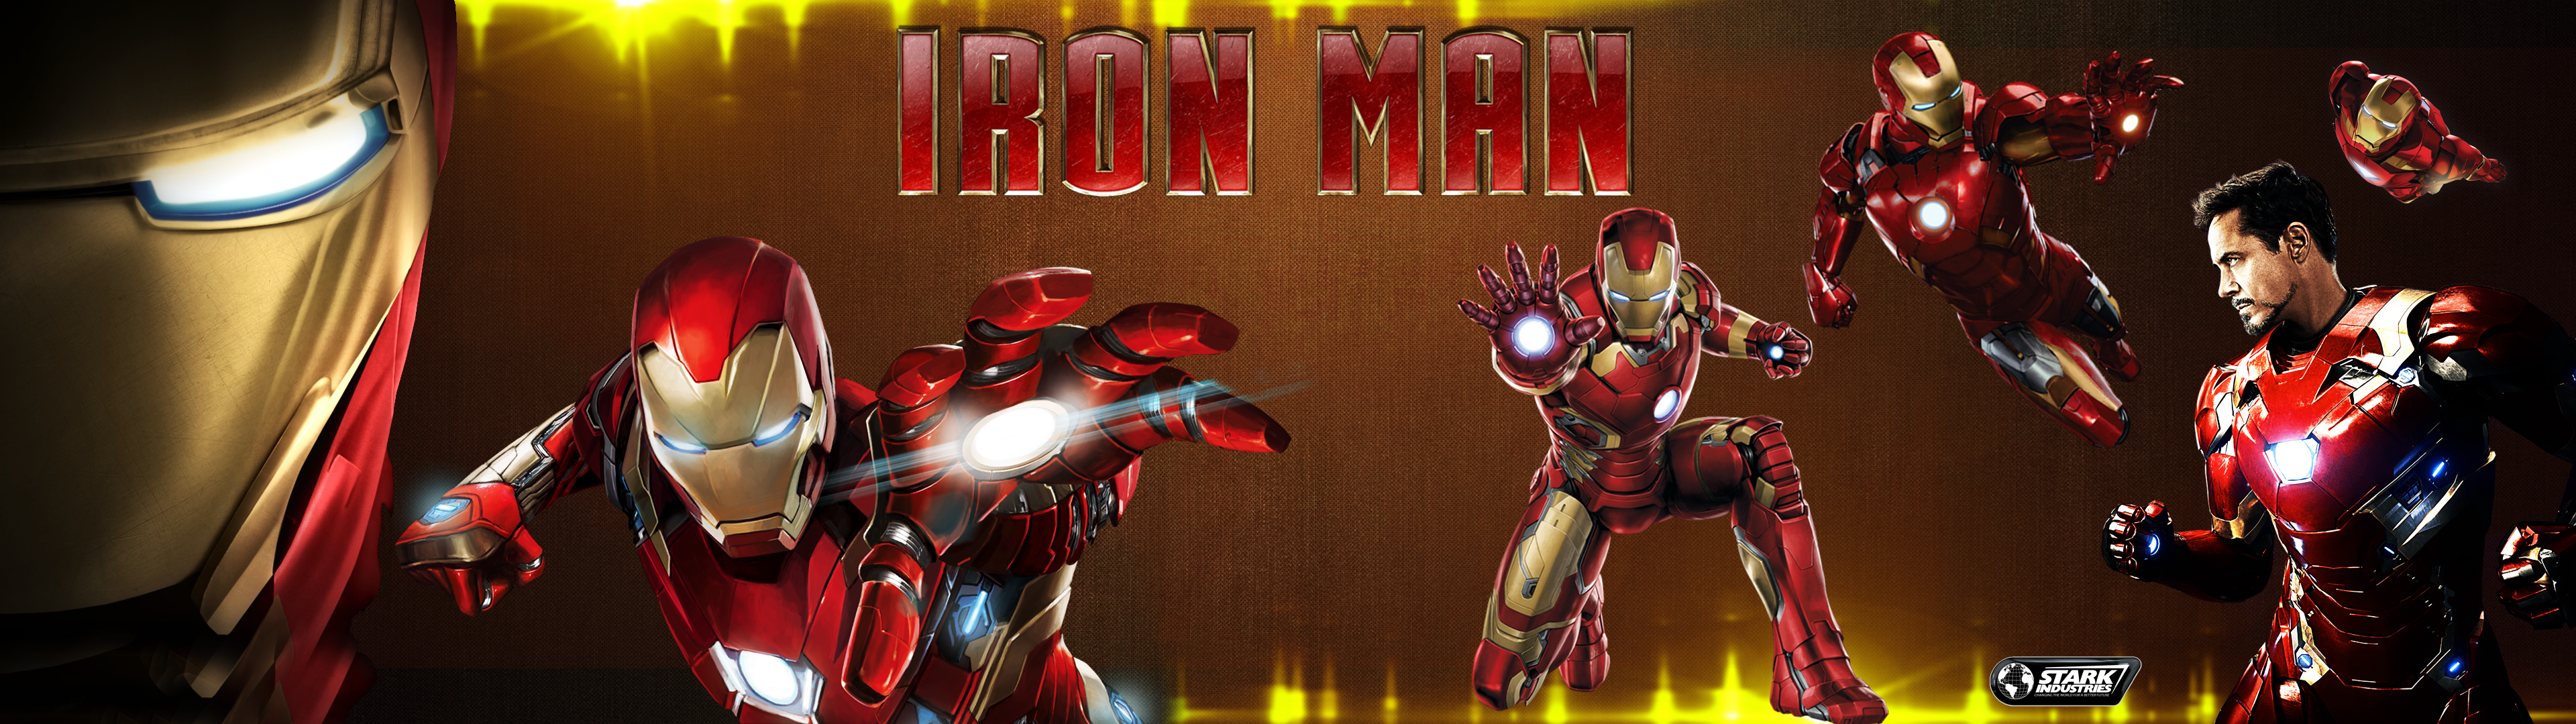 Movie Iron Man 3840x1080